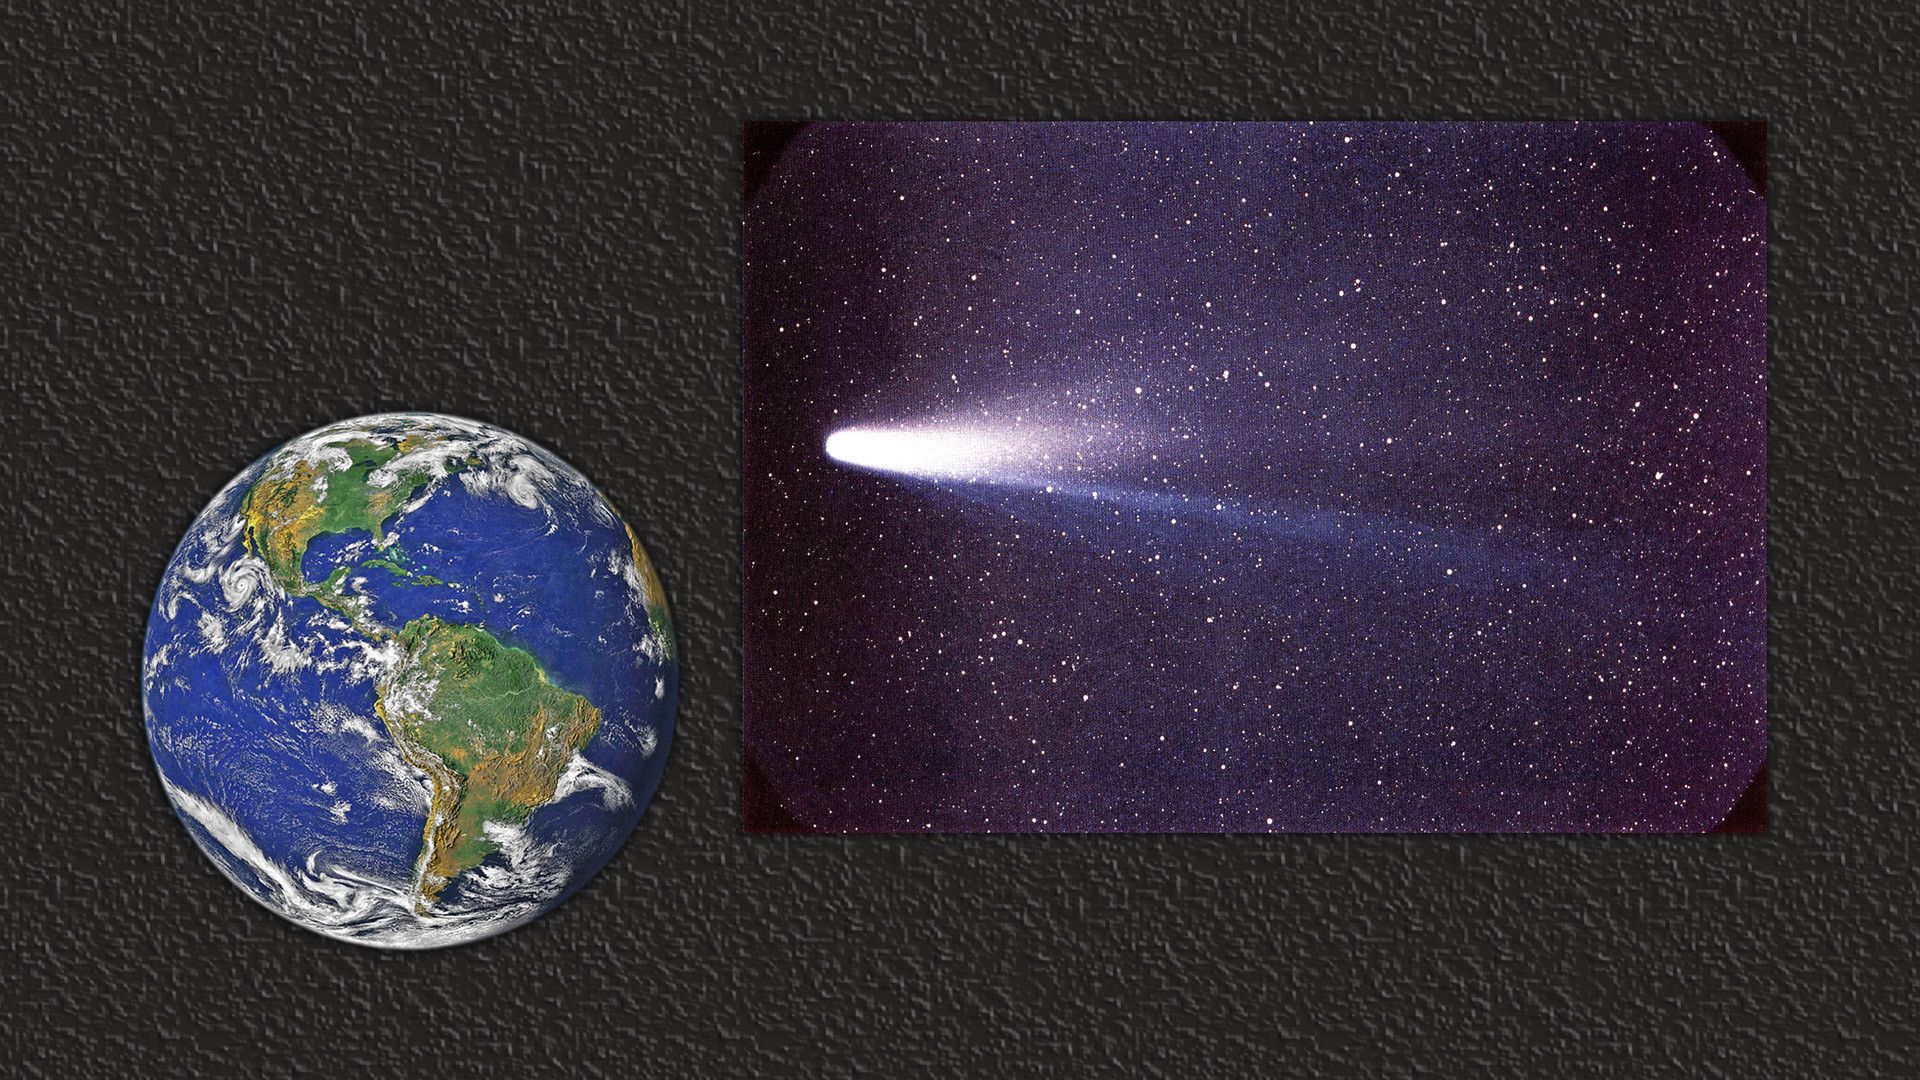 Комета Галлея (справа). Коллаж © L!FE. Фото: © wikipedia.org